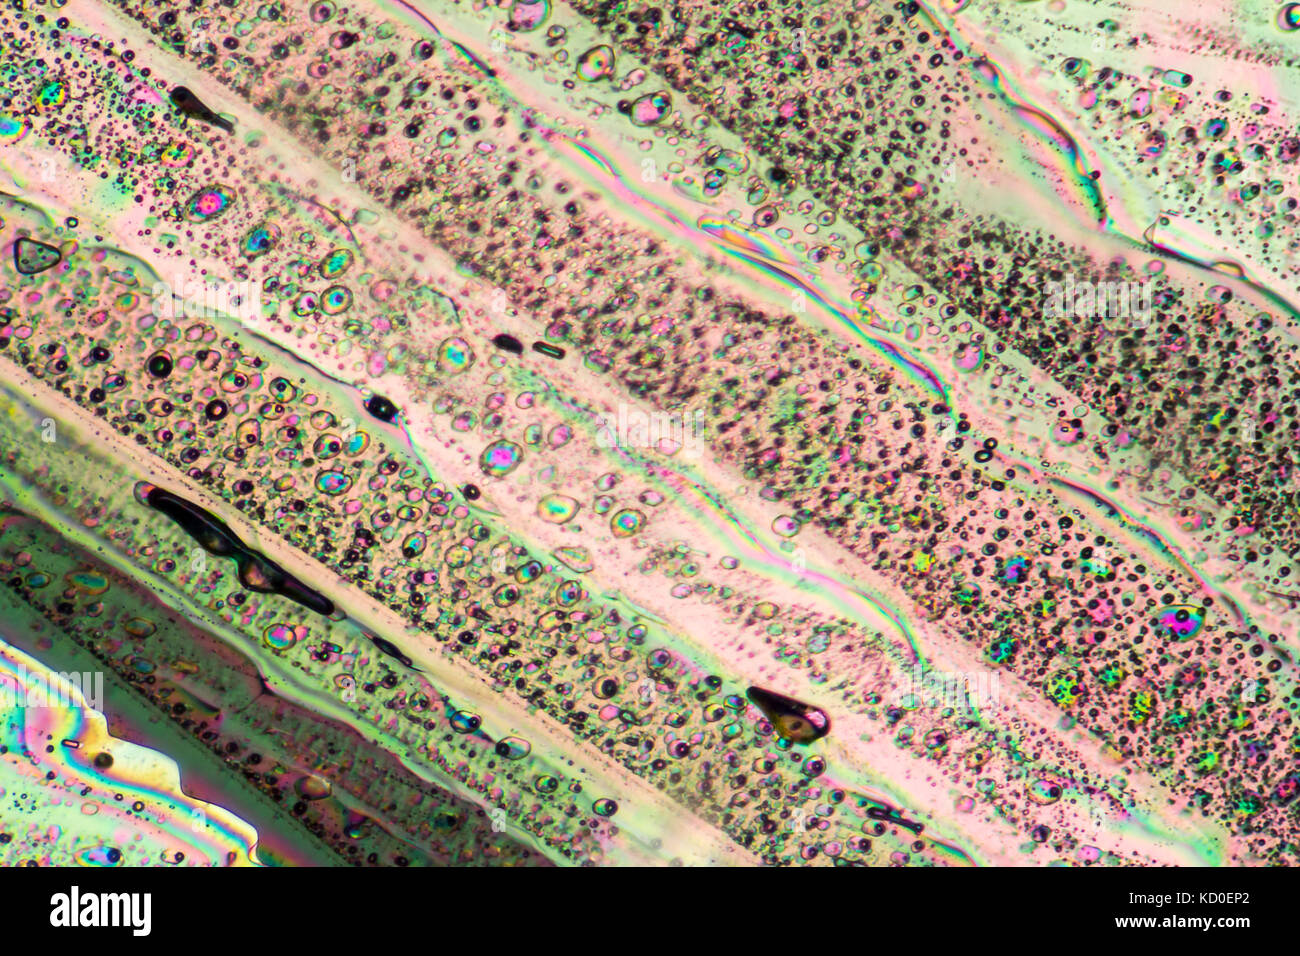 Bunte mikroskopische Aufnahme von Natriumacetat micro Kristalle in polarisiertem Licht Stockfoto